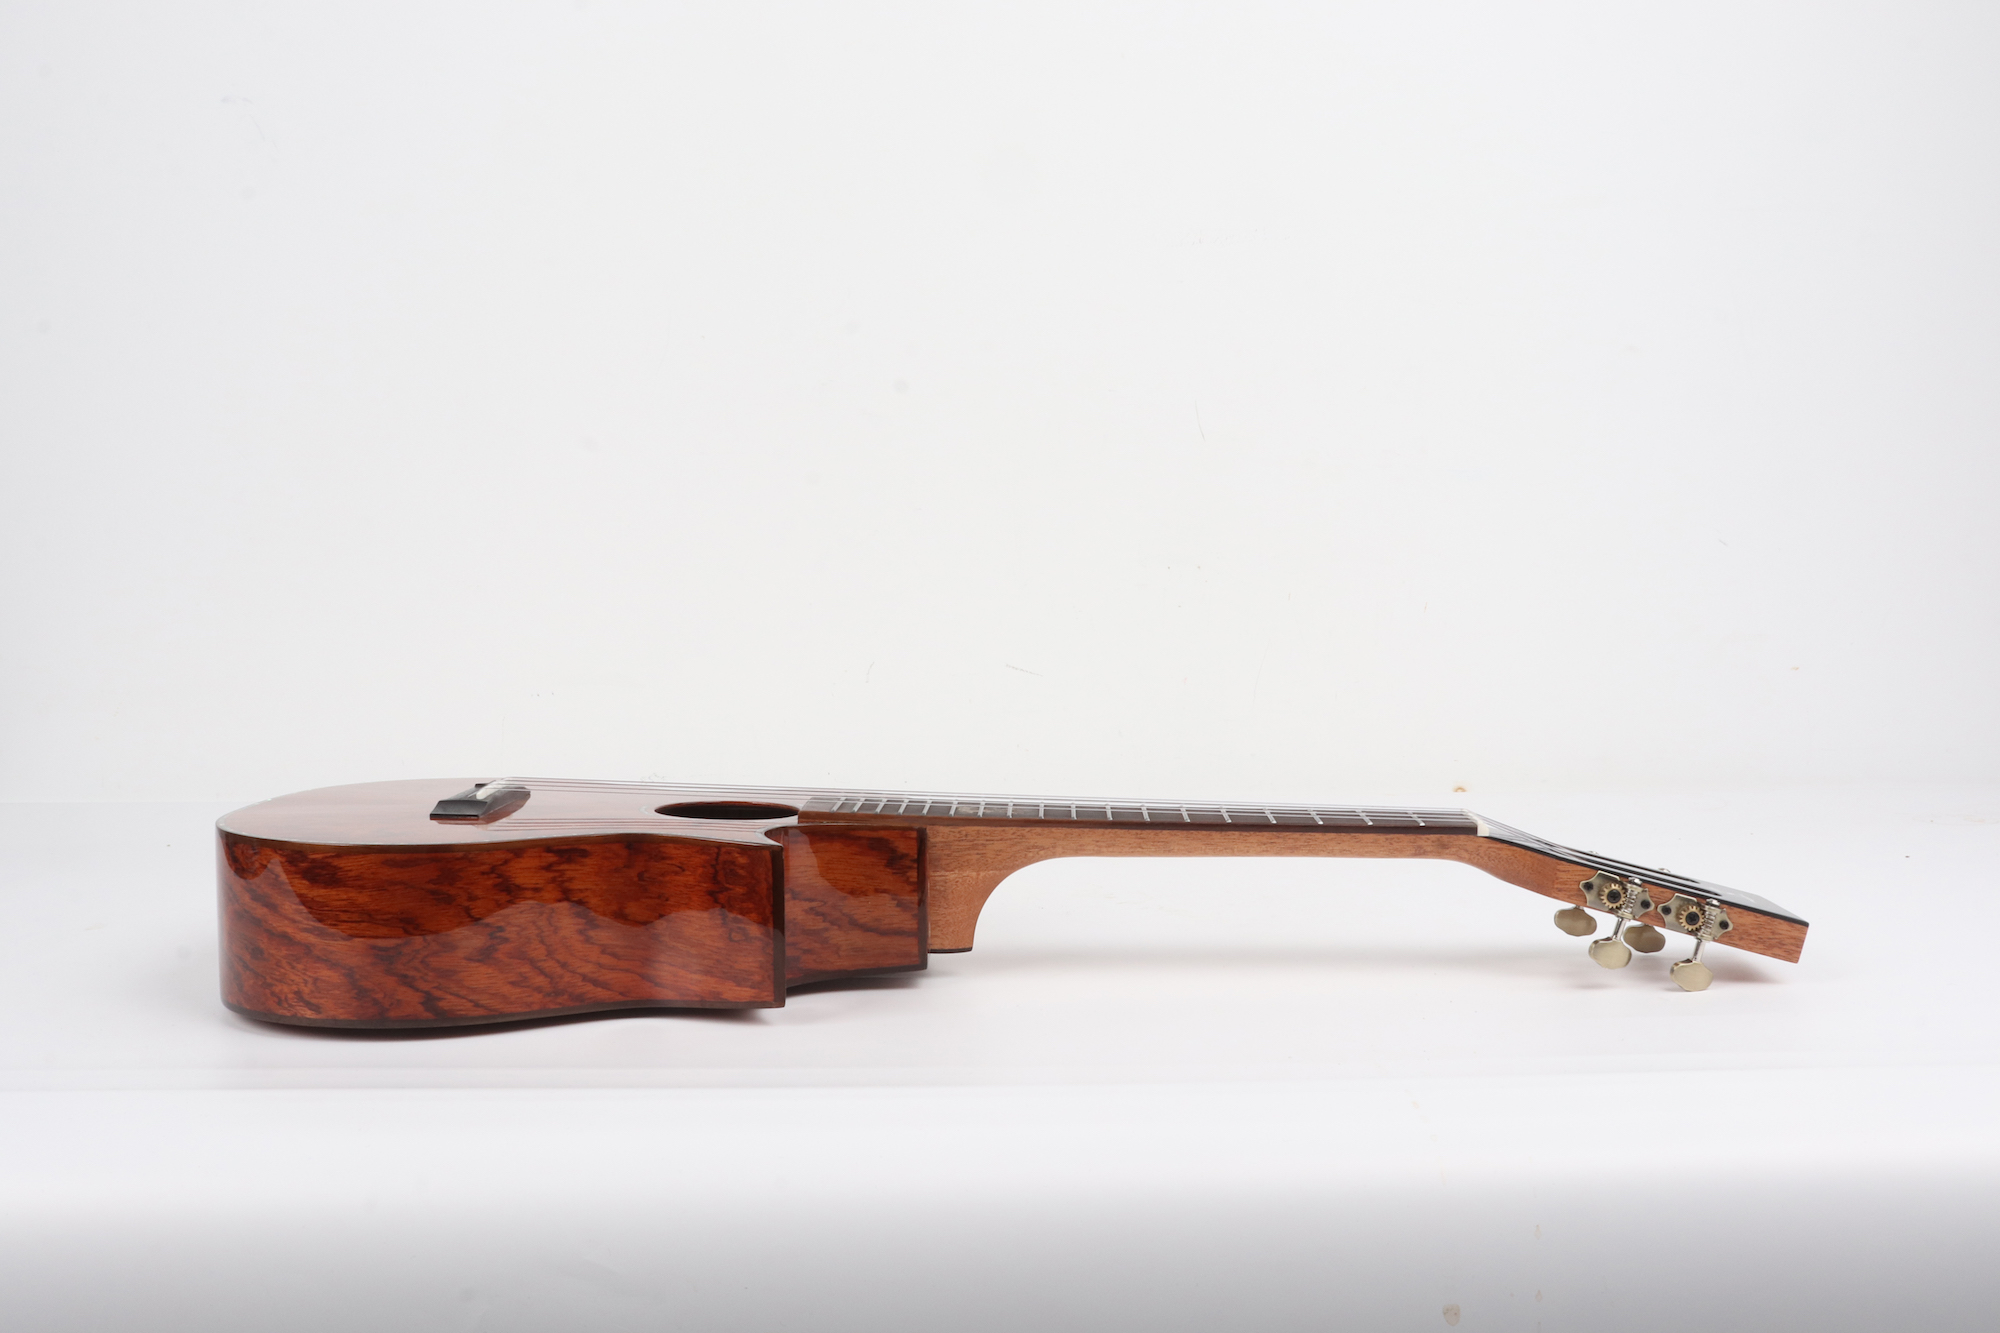 Padauk wood ukulele cutaway